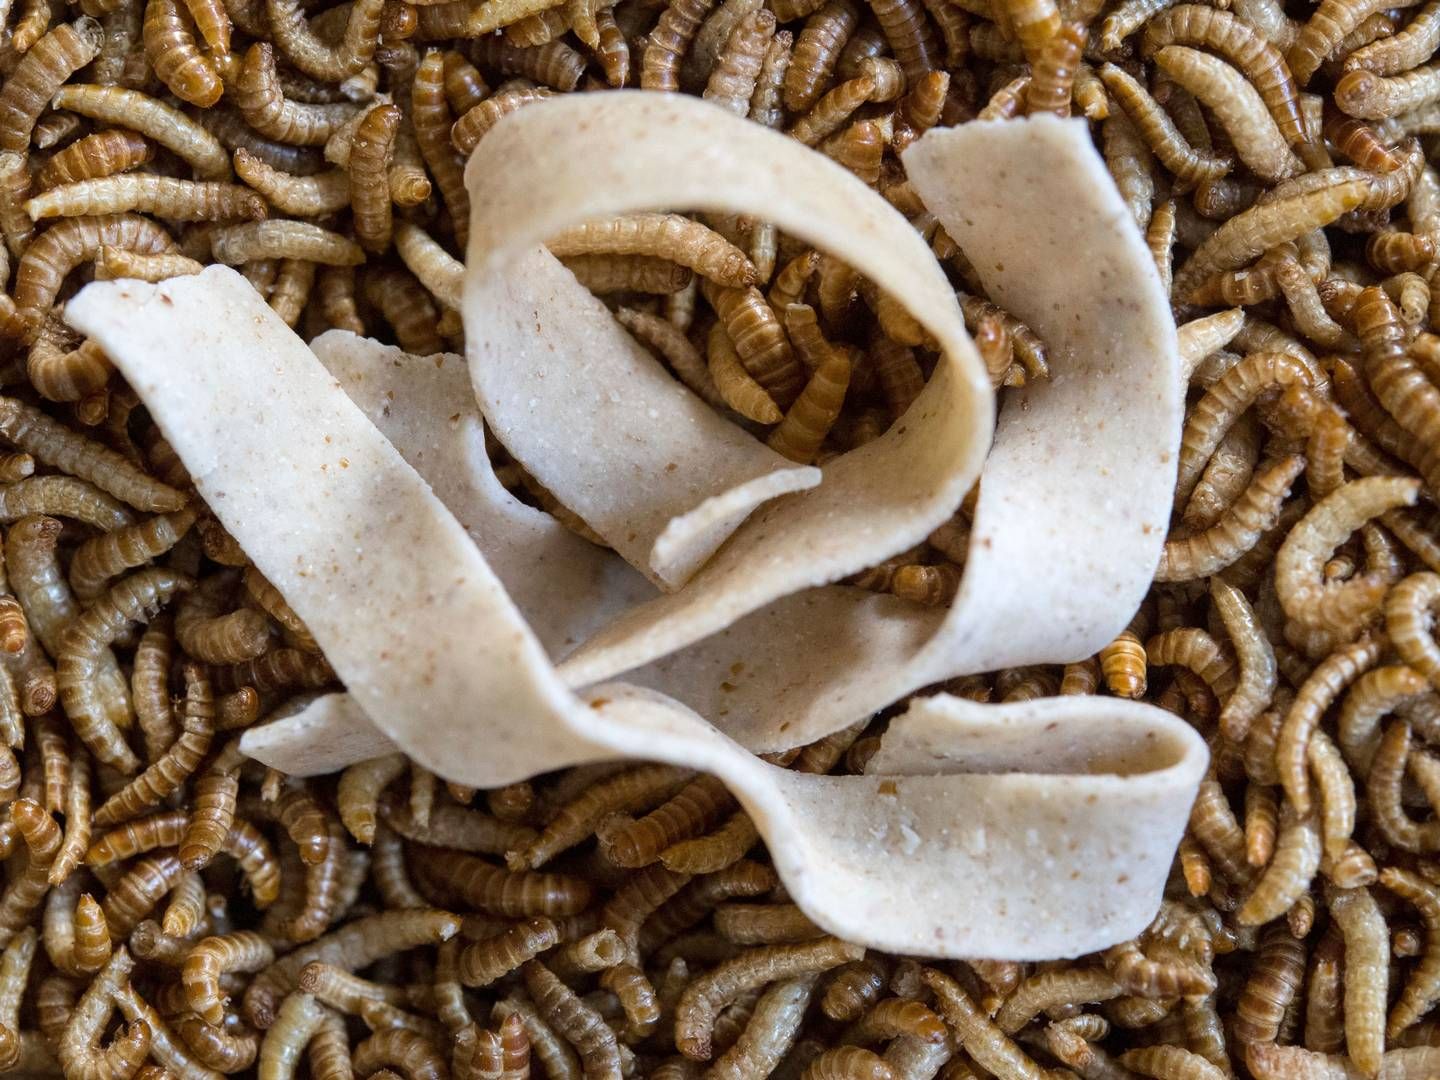 "Insekterne indeholder nogle af de næringsstoffer, som vi har brug for i kosten, og som vi ikke kan få fra plantefødevarer," udtaler professor Jan Værum Nørgaard fra Institut for Husdyr- og Veterinærvidenskab på Aarhus Universitet. | Foto: Marijan Murat/AP/Ritzau Scanpix